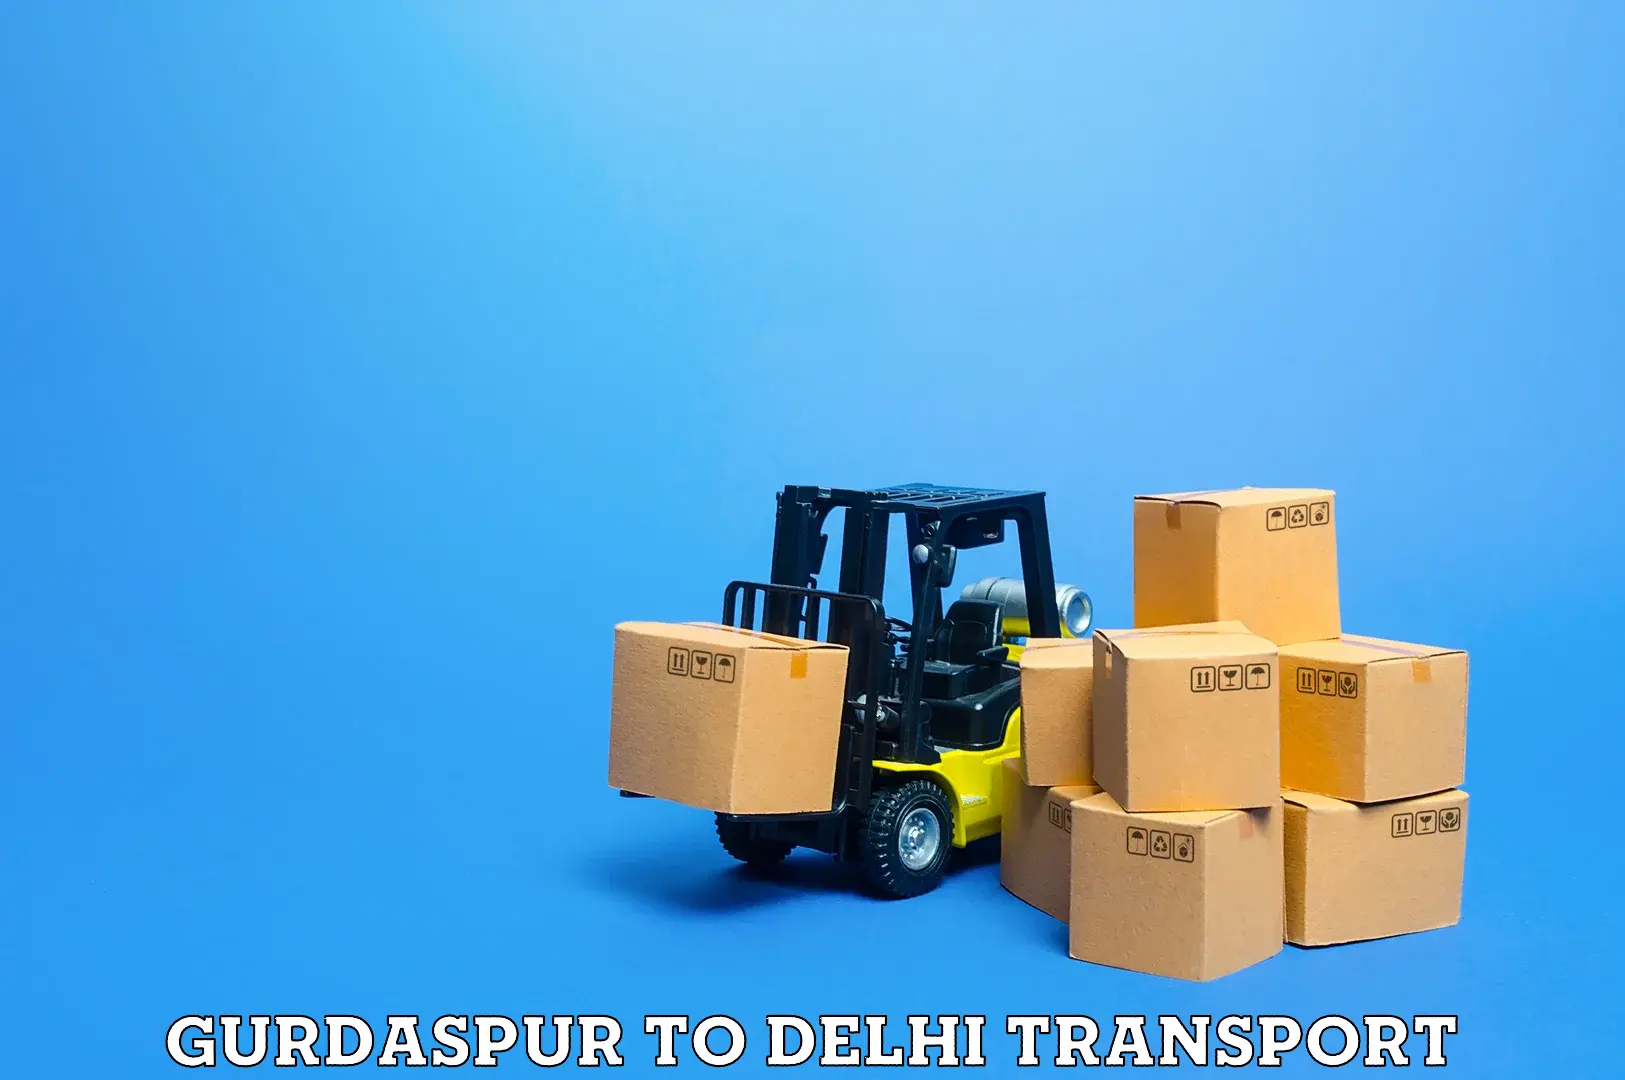 Lorry transport service Gurdaspur to Delhi